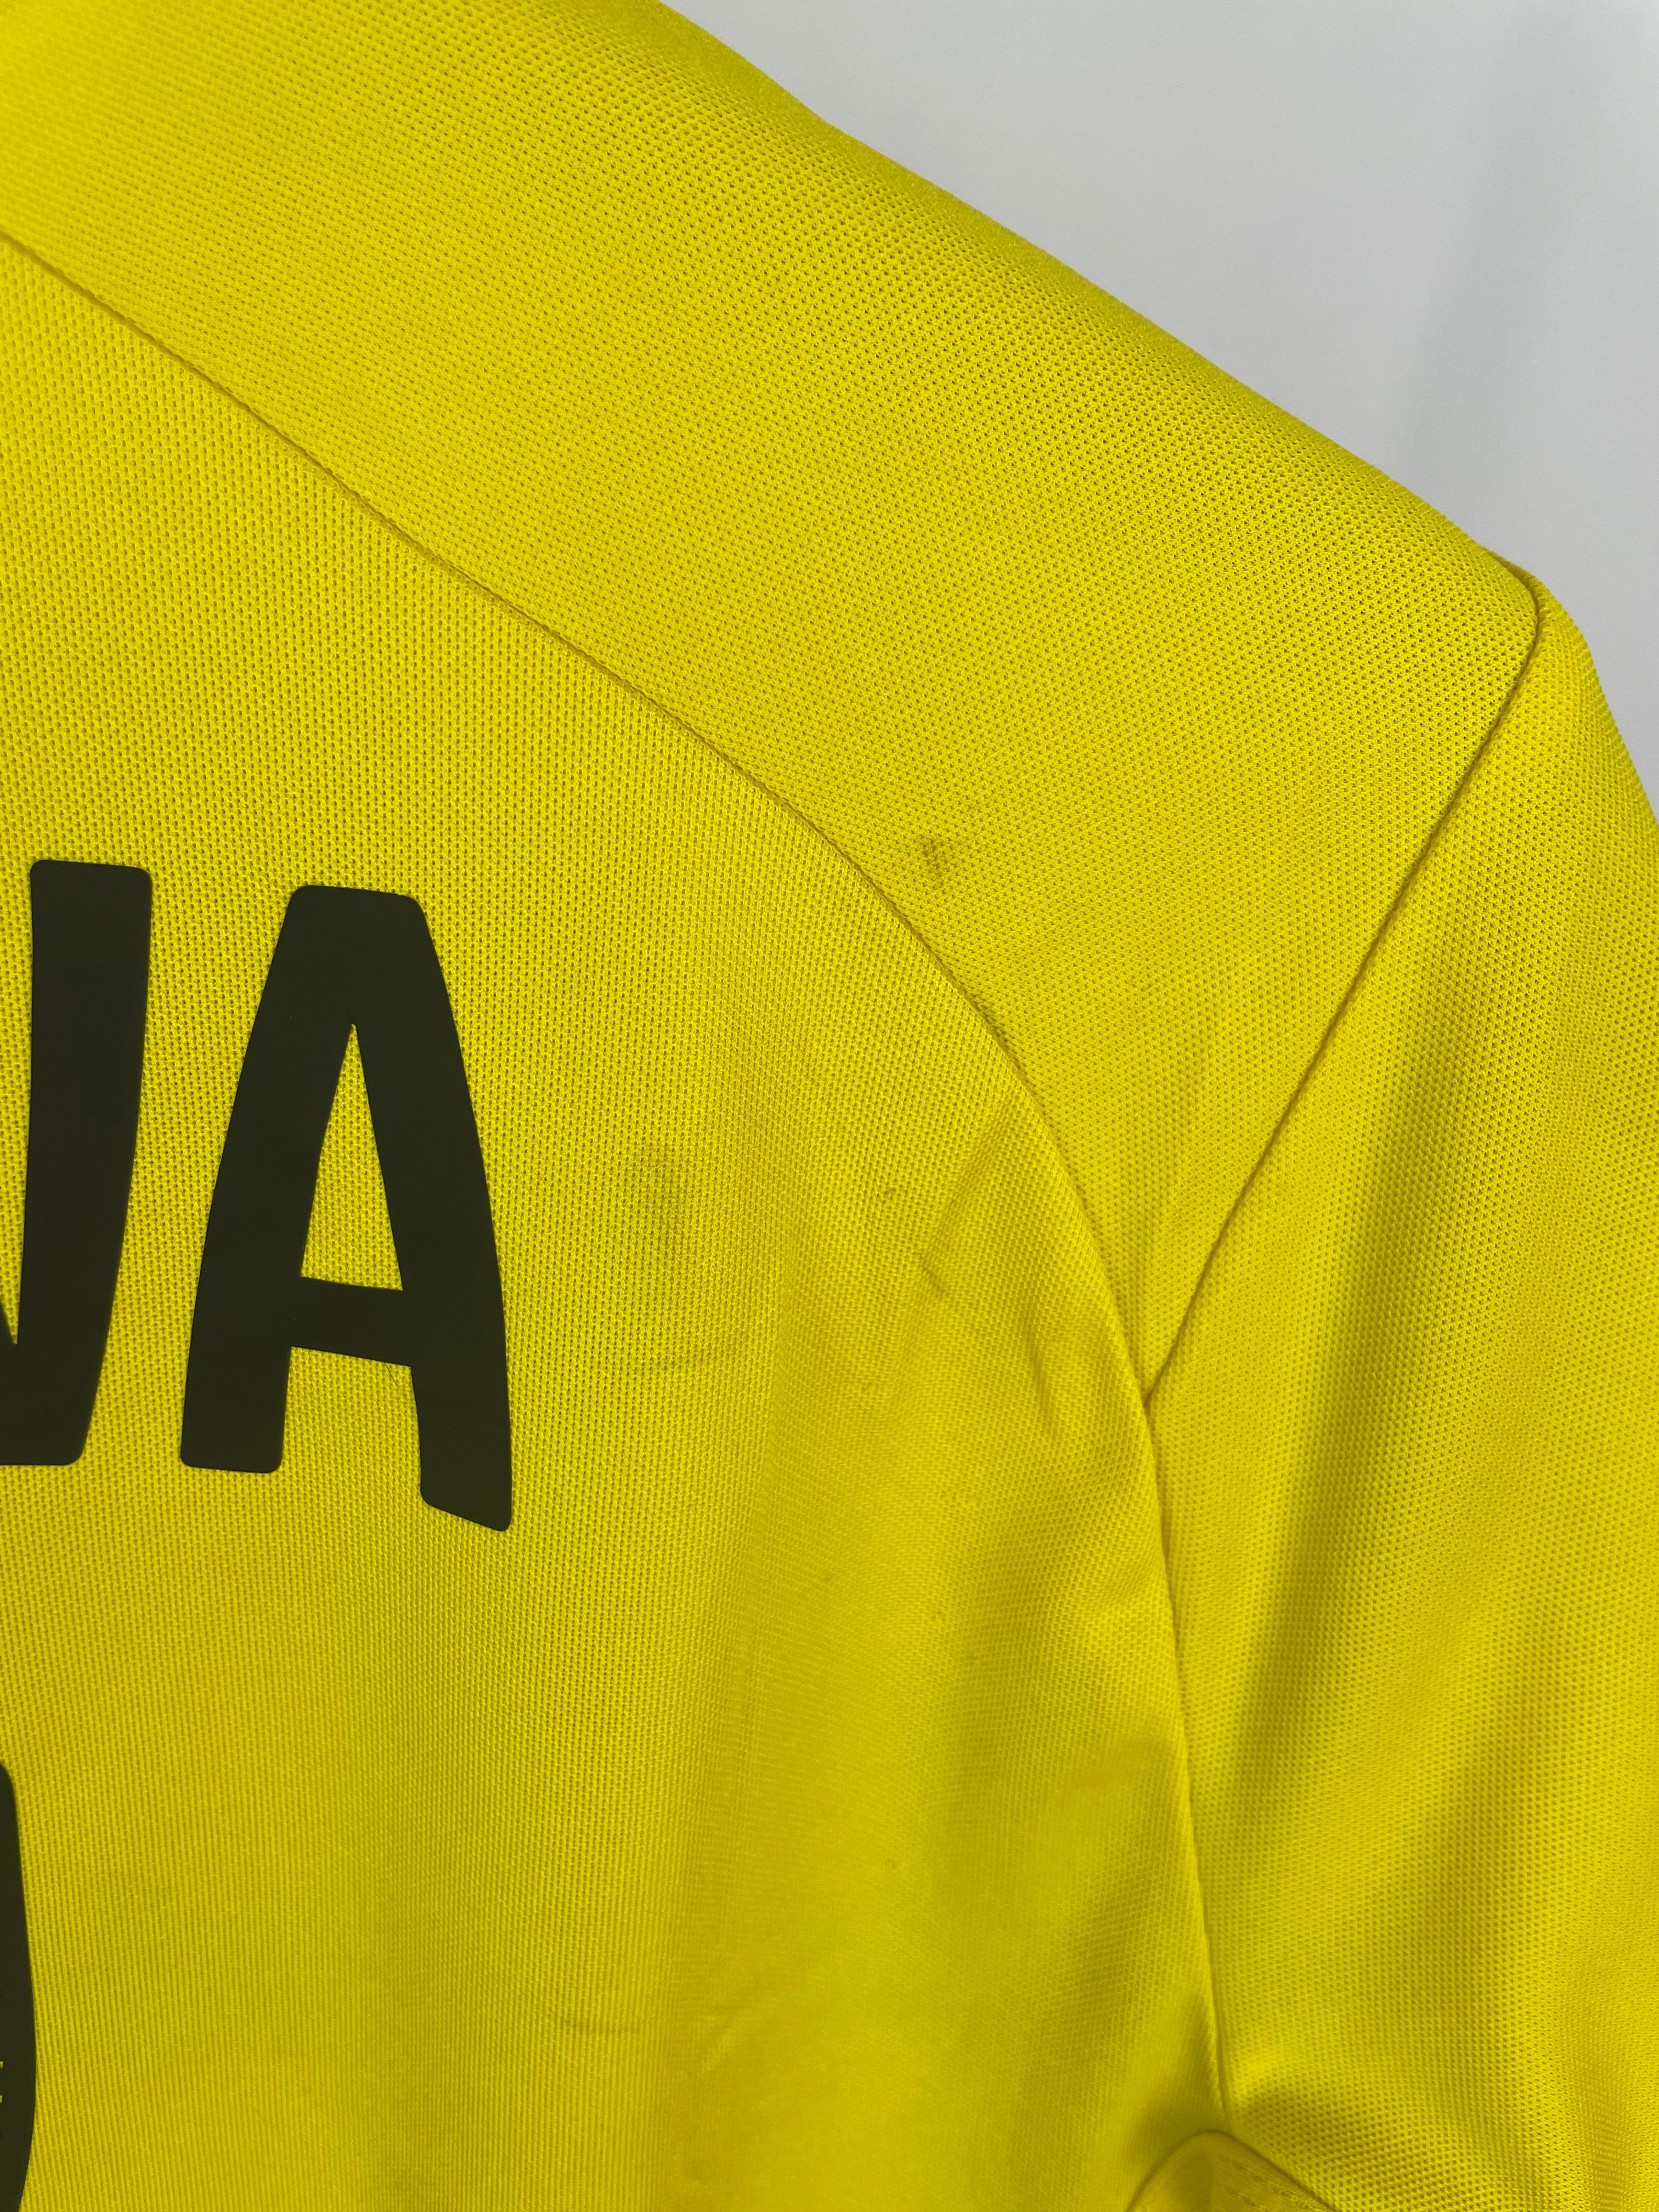 Shinji Kagawa Dortmund 14/15 home shirt - S